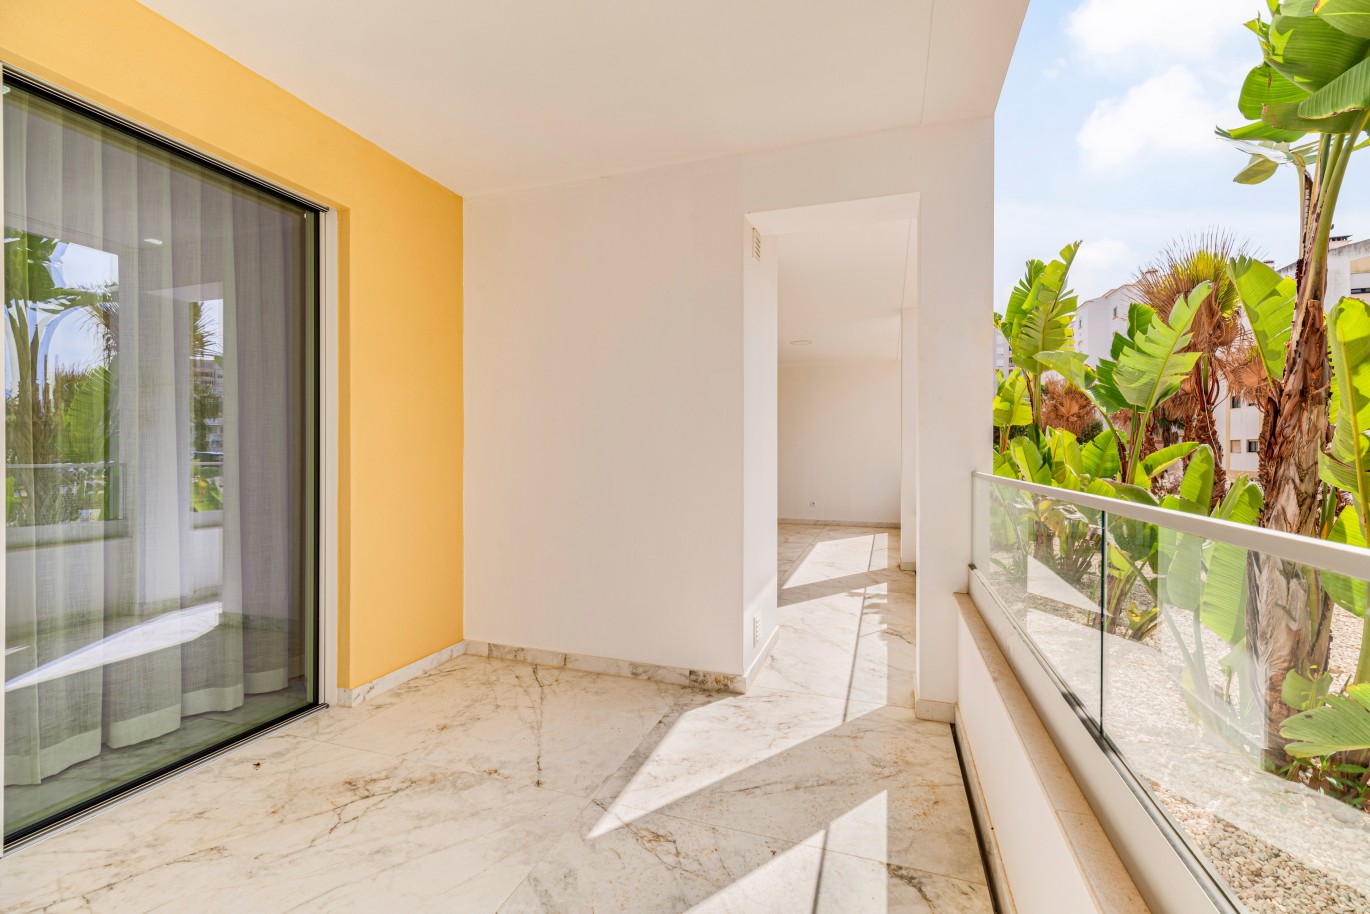 Apartamento, com terraço, para venda, em Lagos, Algarve_238615